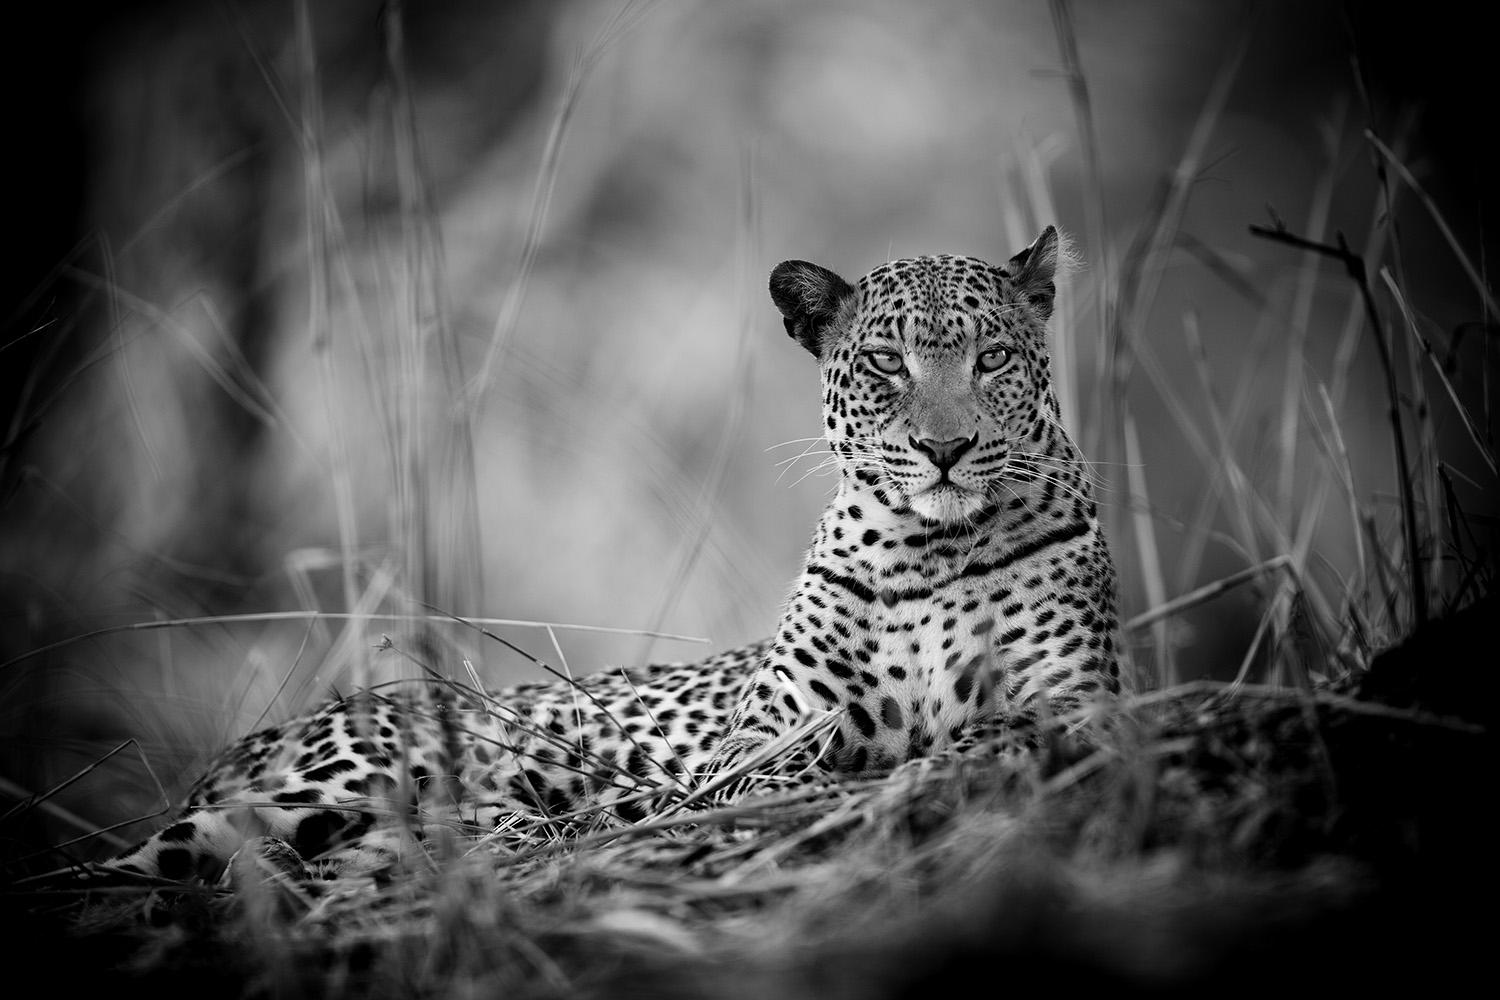 Christian Cravo Black and White Photograph - Leopard, Jungle, Zambia, Safari